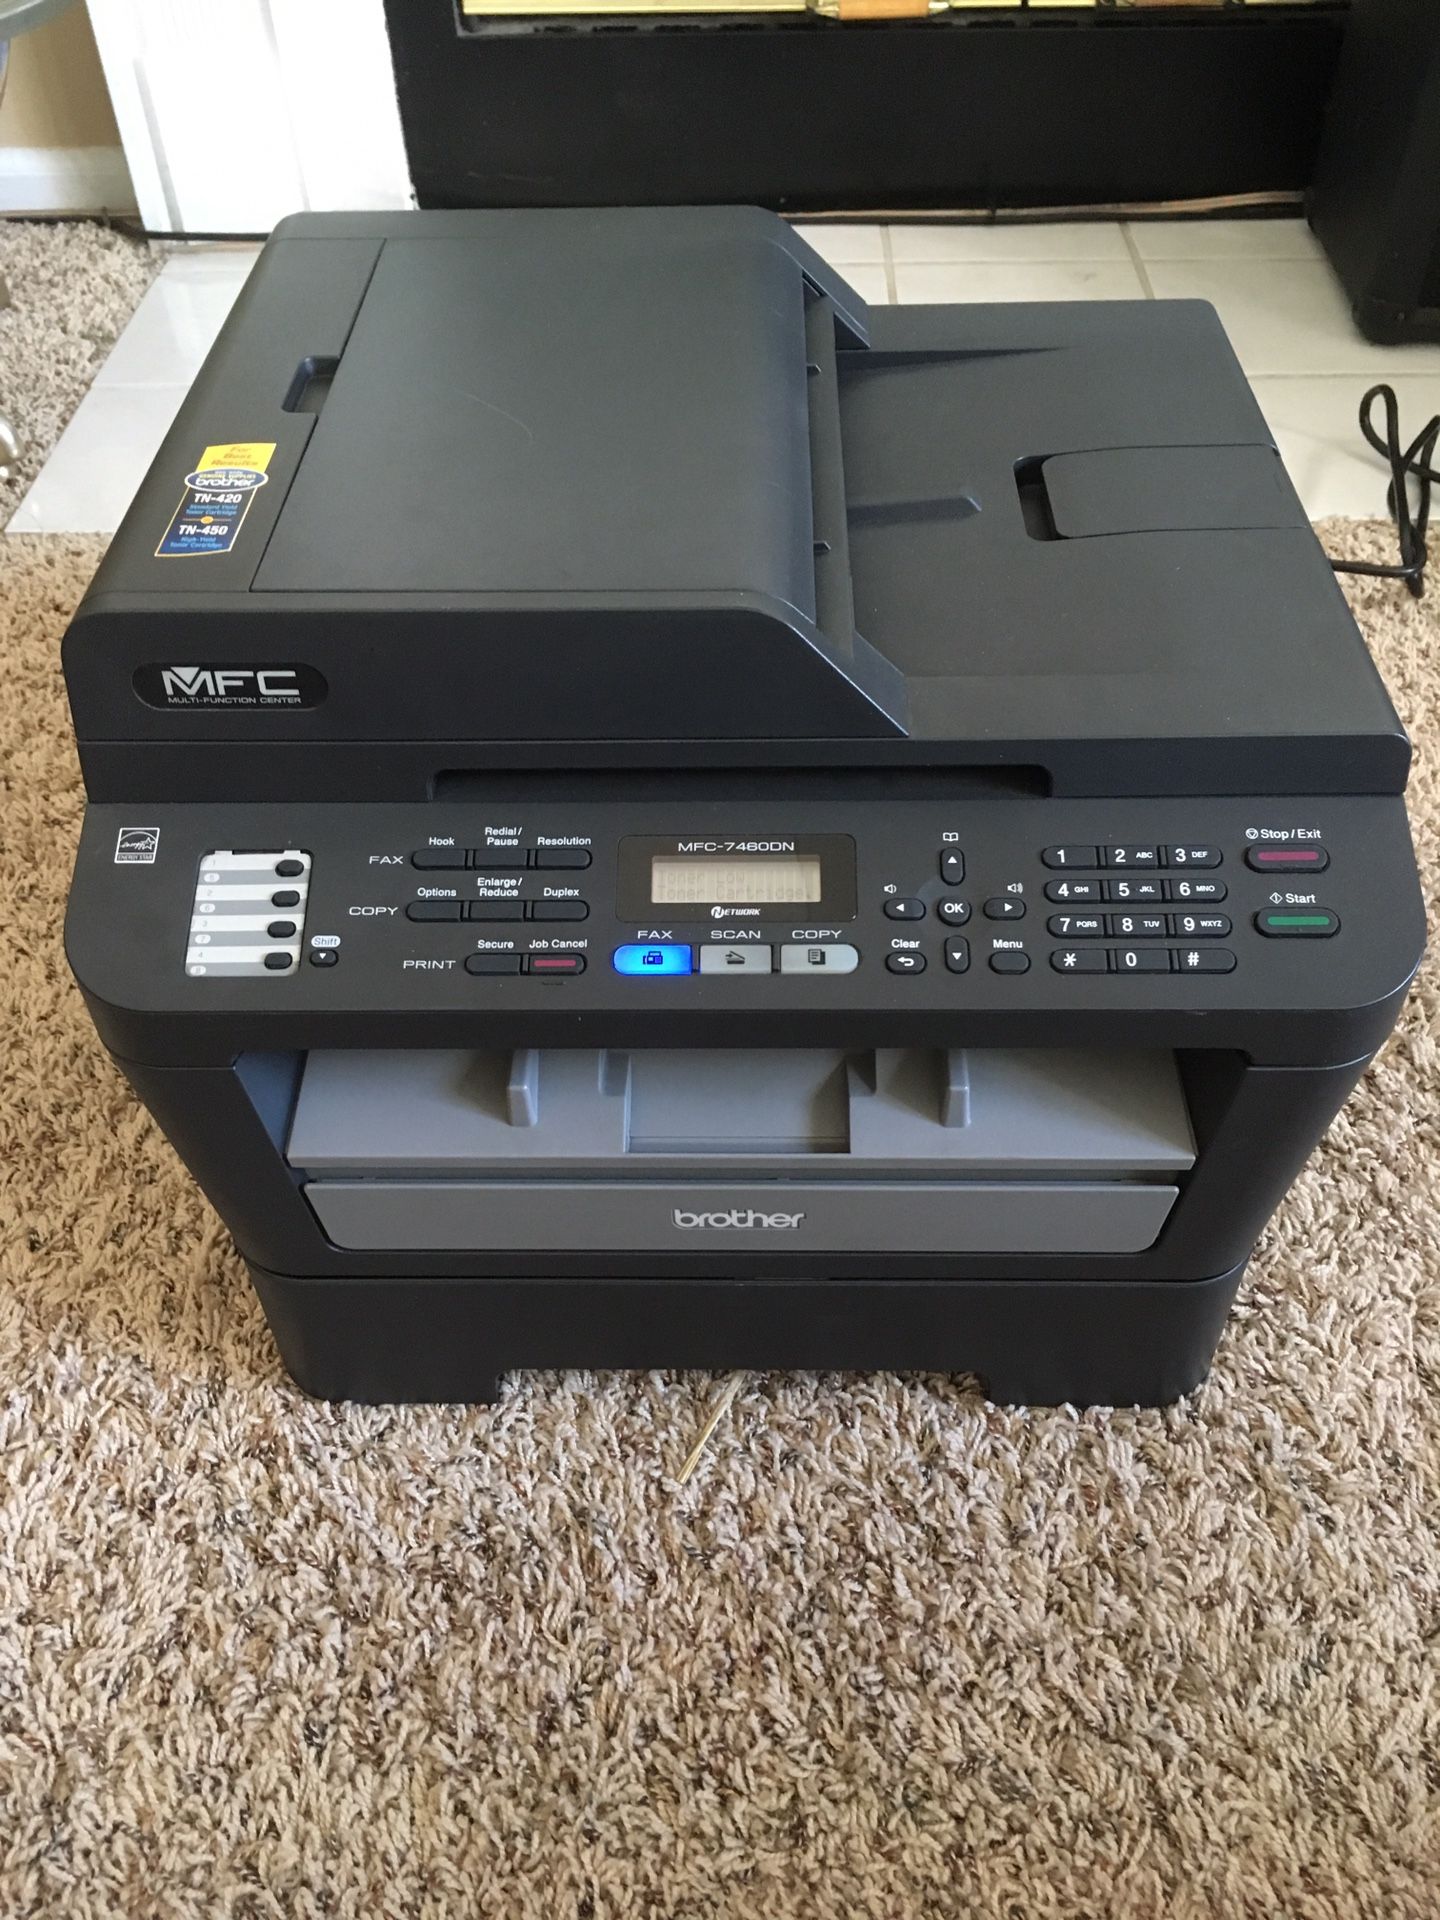 Brother MFC-7460DN Monochrome Printer / Scanner / Fax Machine